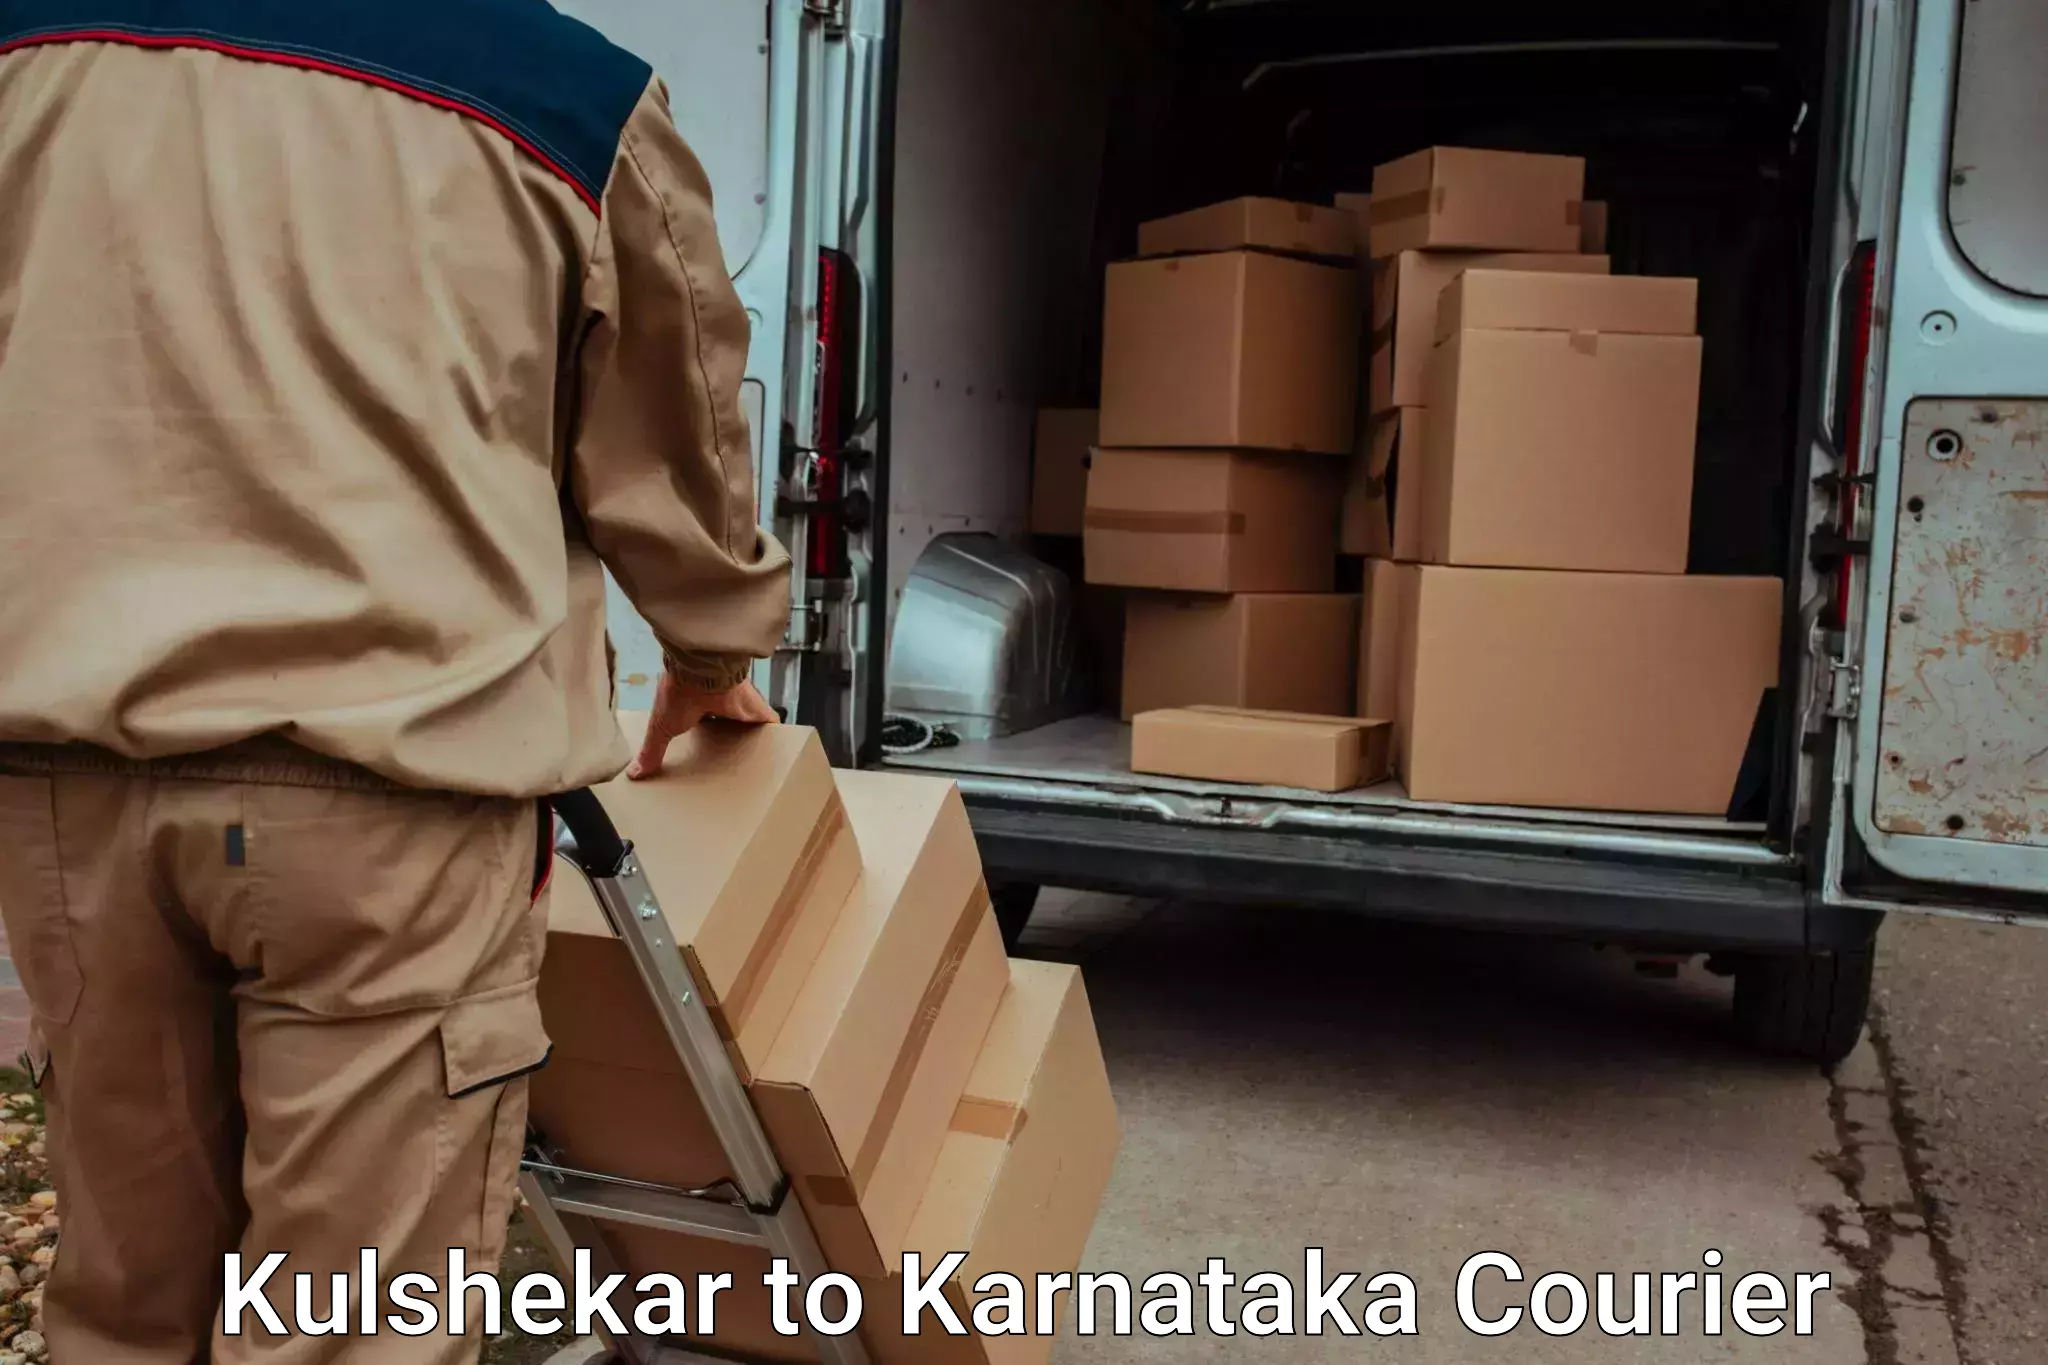 International baggage delivery in Kulshekar to Bangarapet